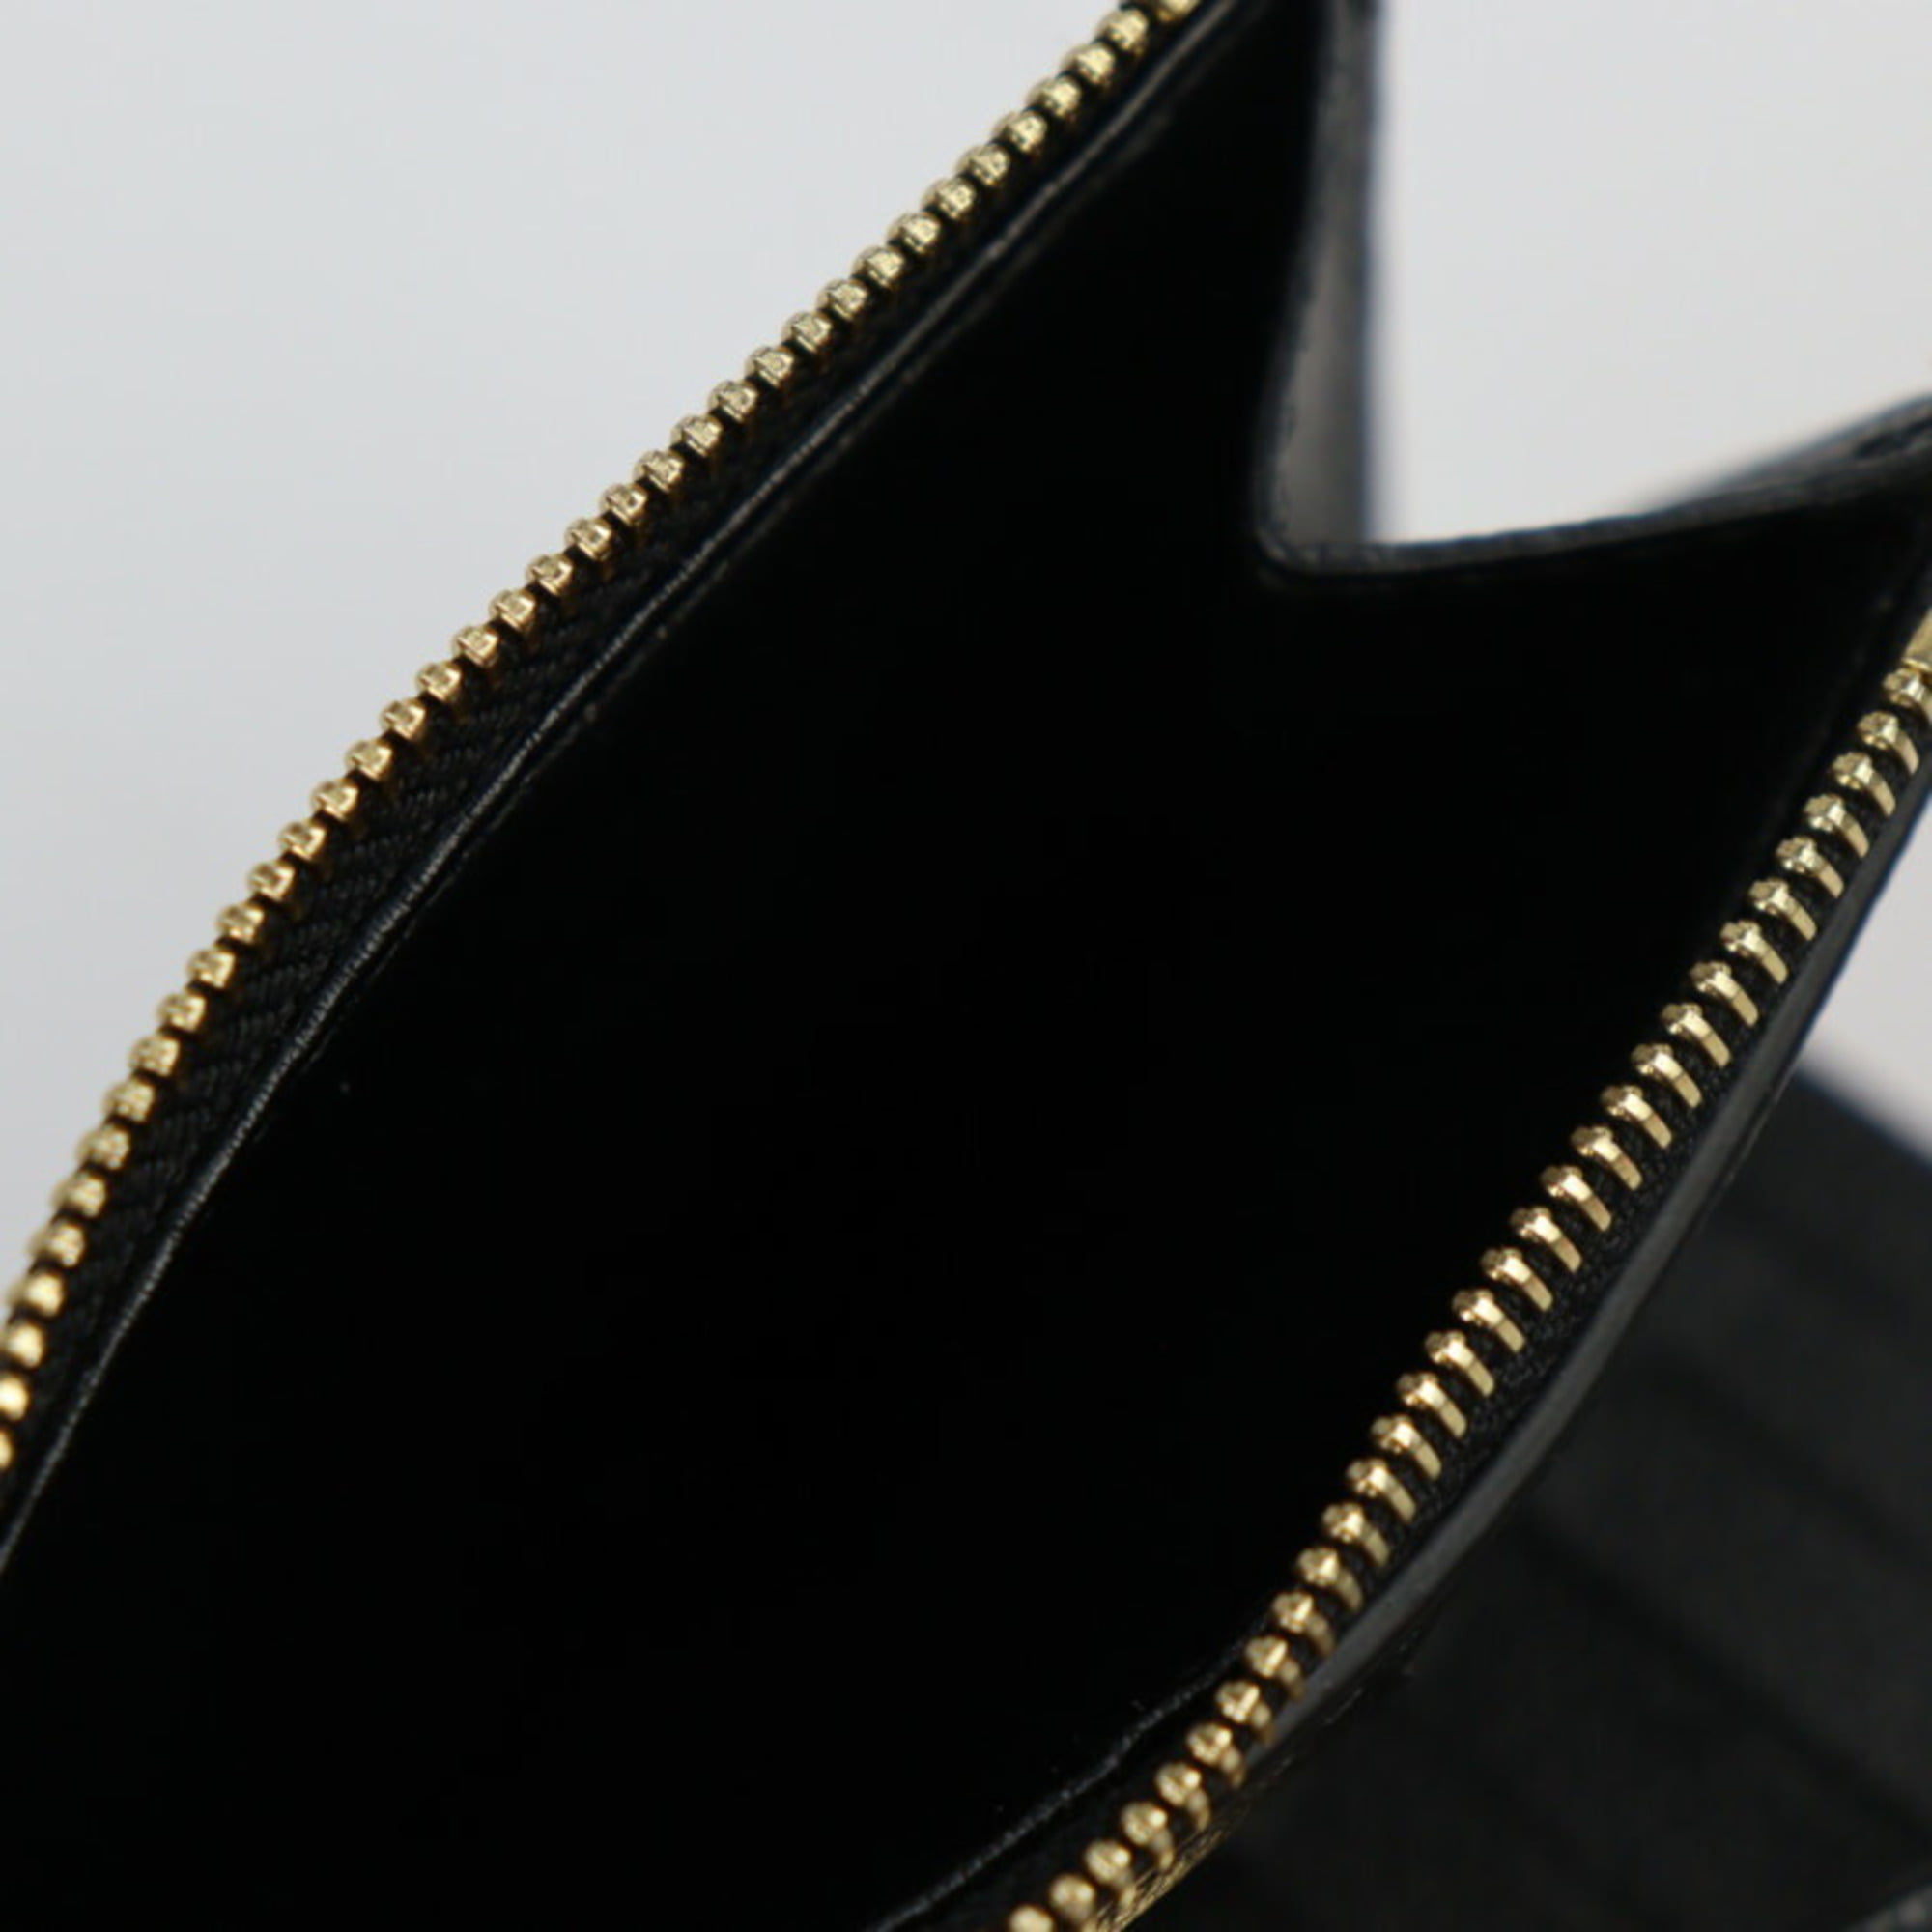 Louis Vuitton Tri-fold wallet Portefeuille lock mini calf leather Noir  M63921